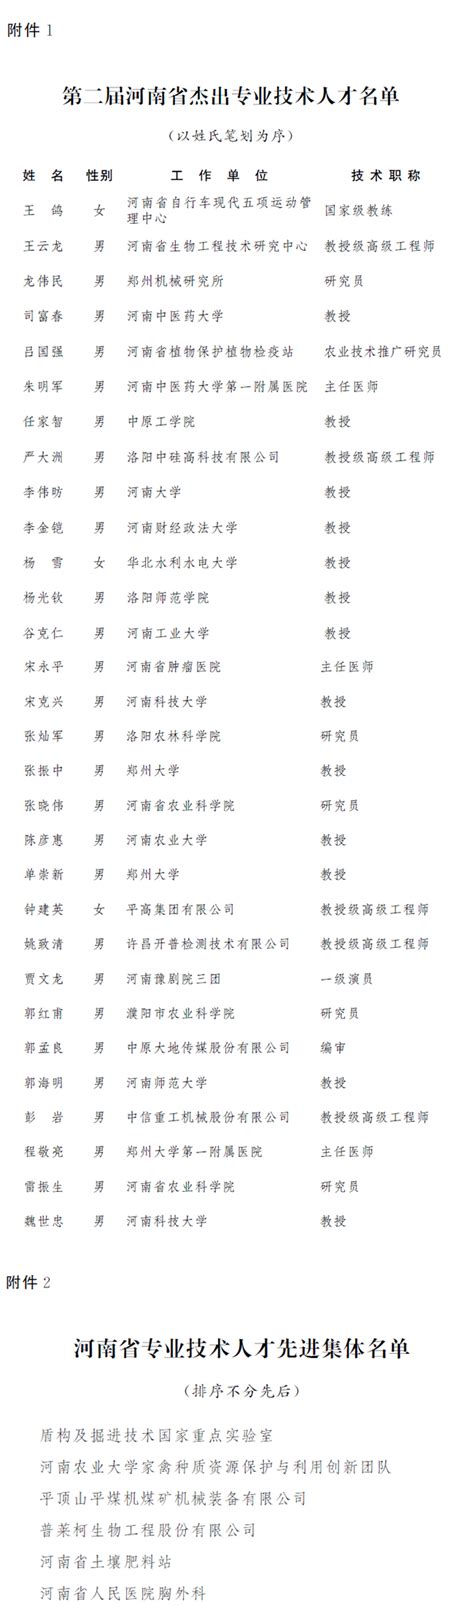 人民日报：河南省人才集团在郑州商学院成立首家高校人才工作站-郑州商学院-新闻中心